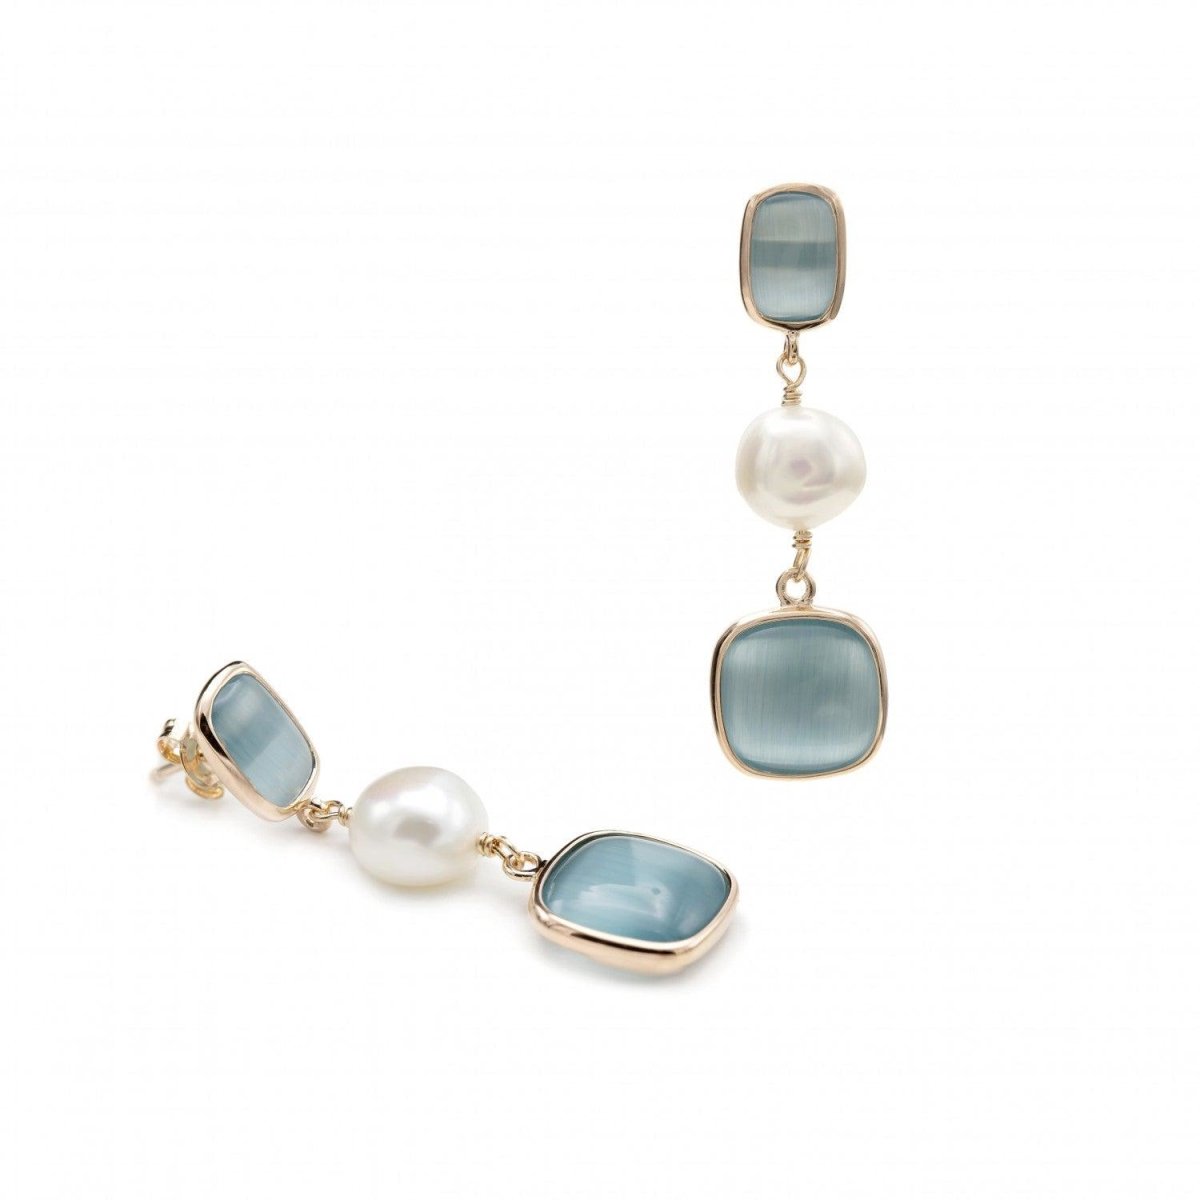 Pendiente · Pendientes de piedras de colores en tono azul con perla